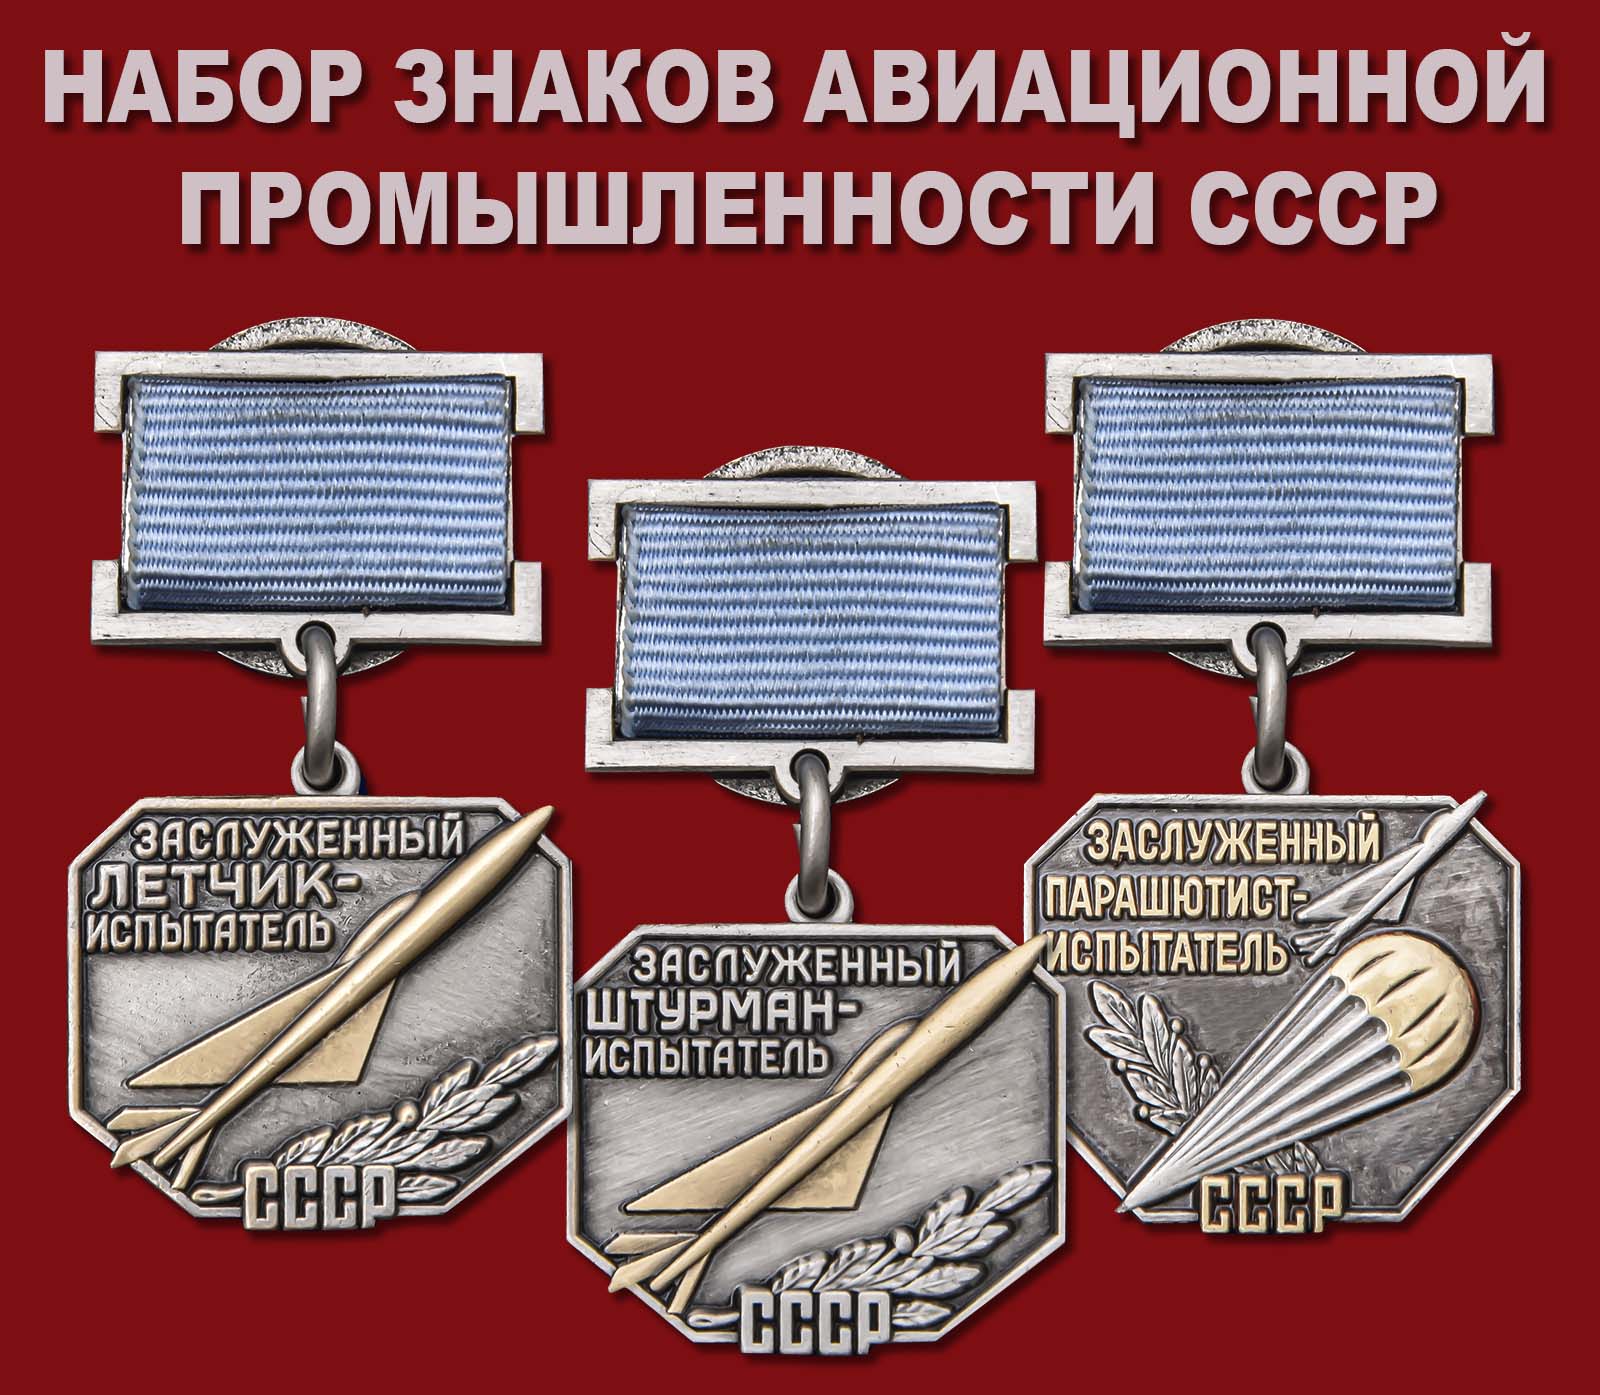 Купить набор знаков Авиационной промышленности СССР